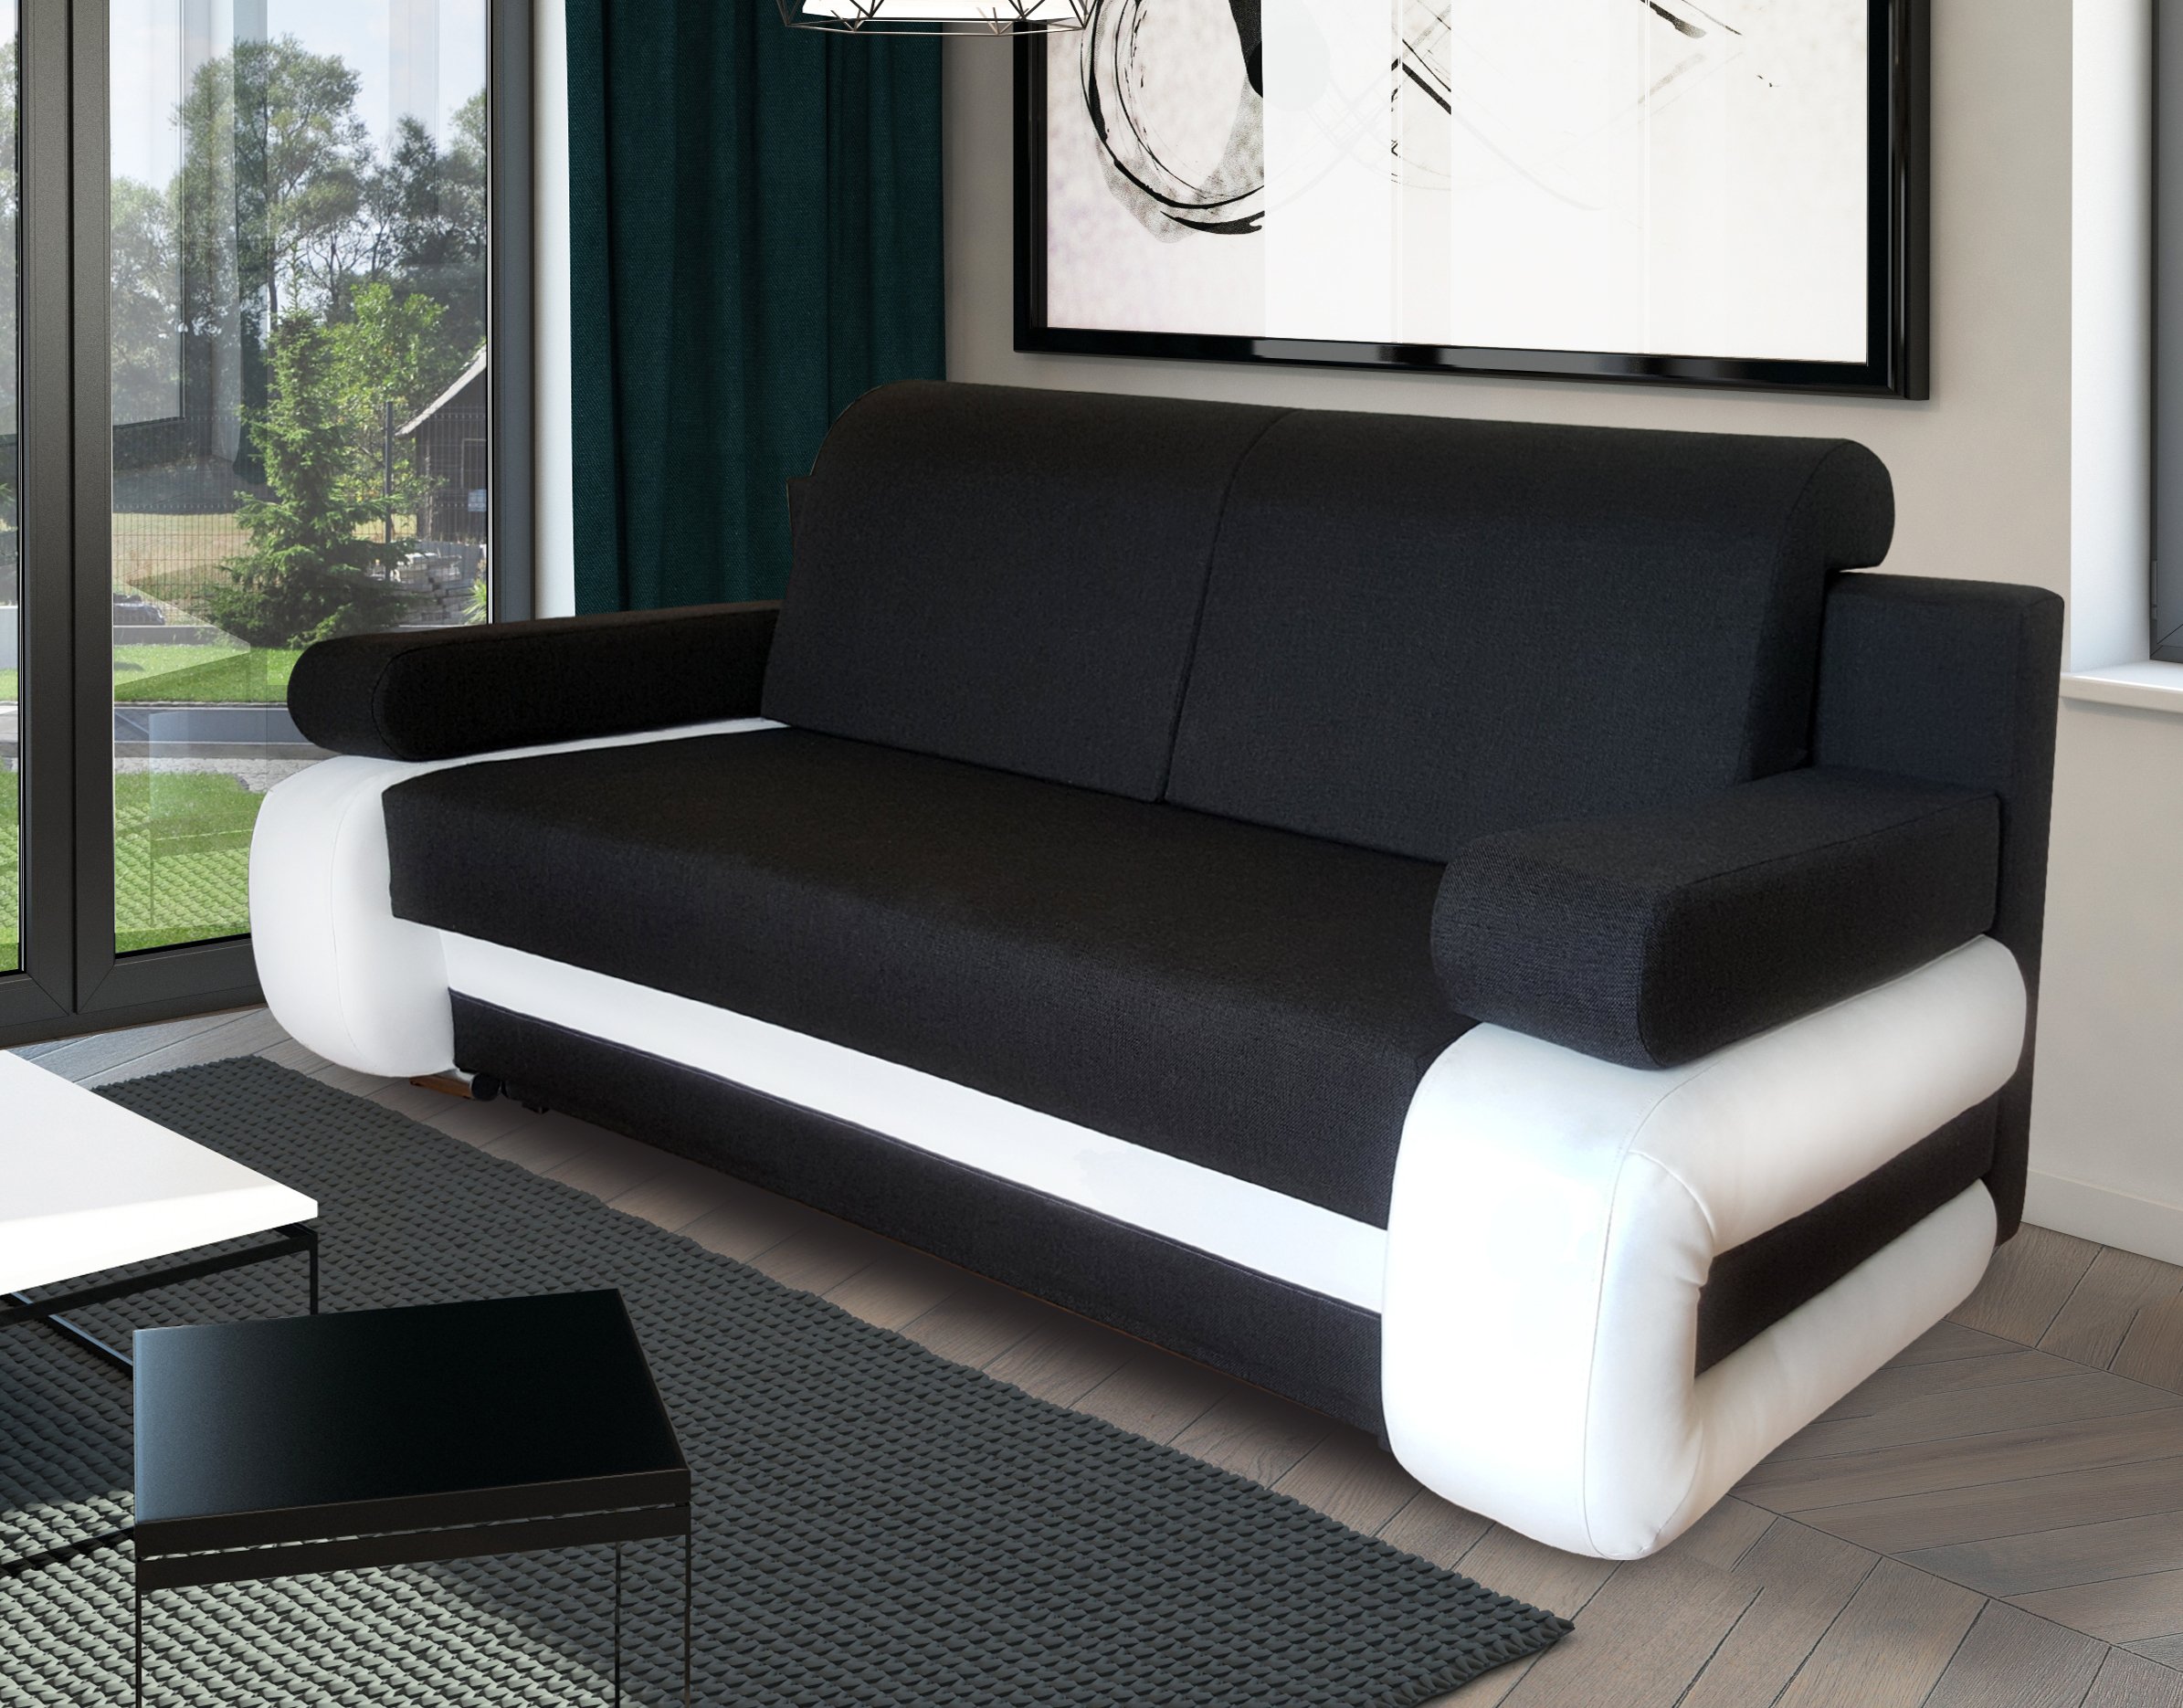 Красивая диван кровать. Стильные диваны. Современные диваны. Красивые диваны. Диван кровать.